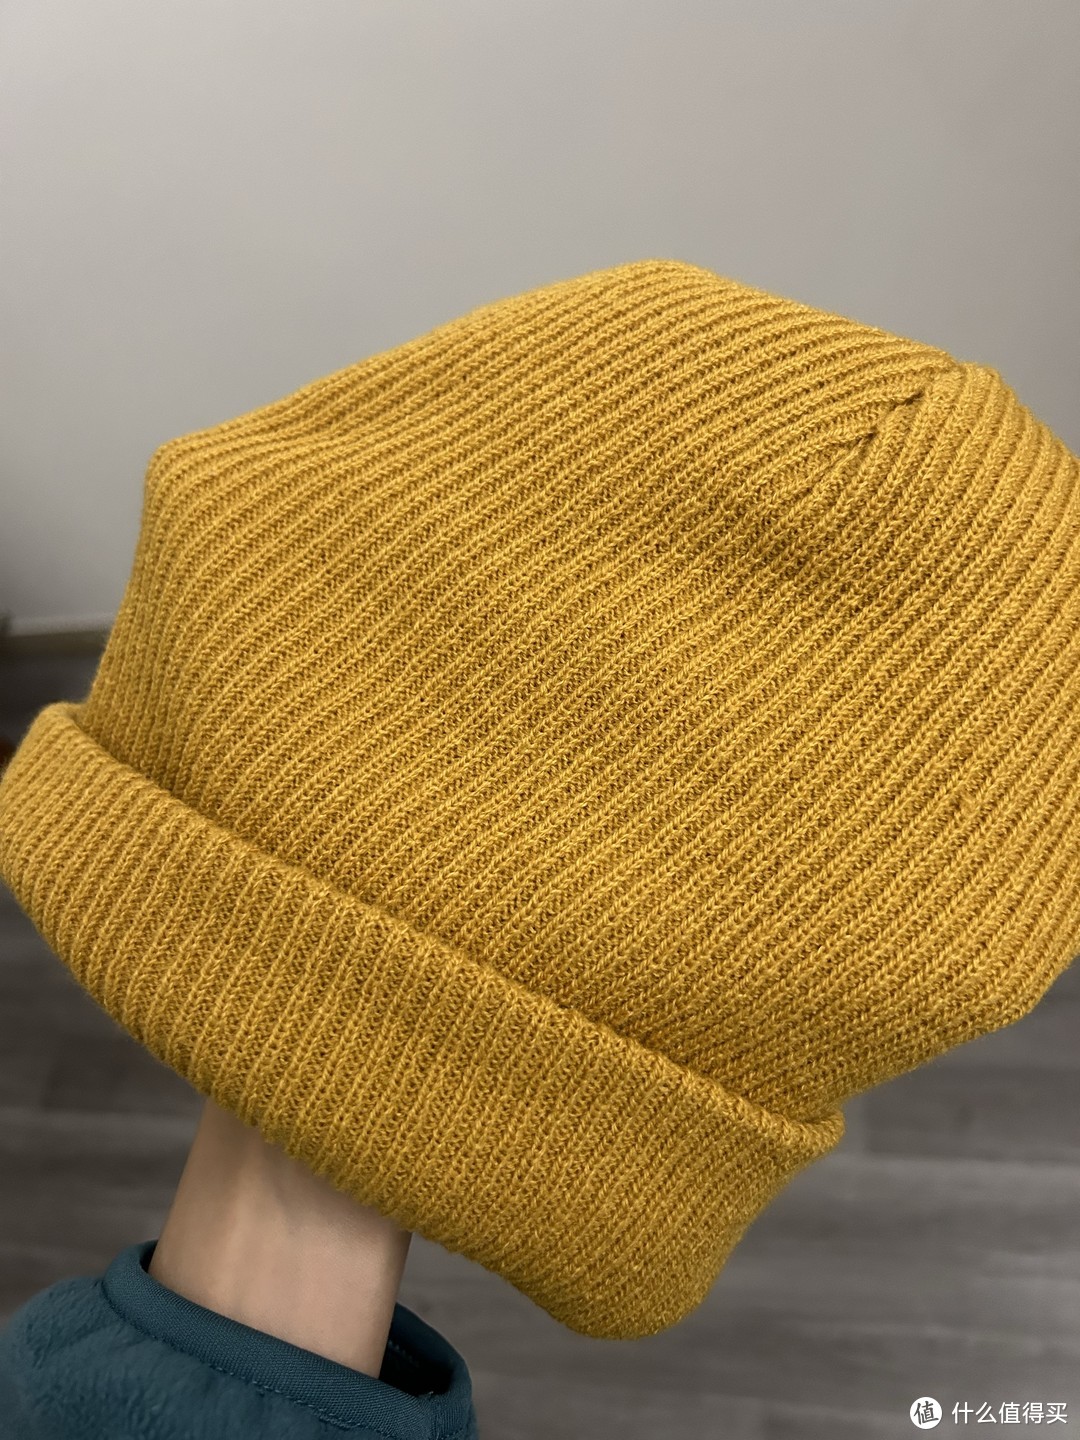 平价帽子系列一:羊毛帽